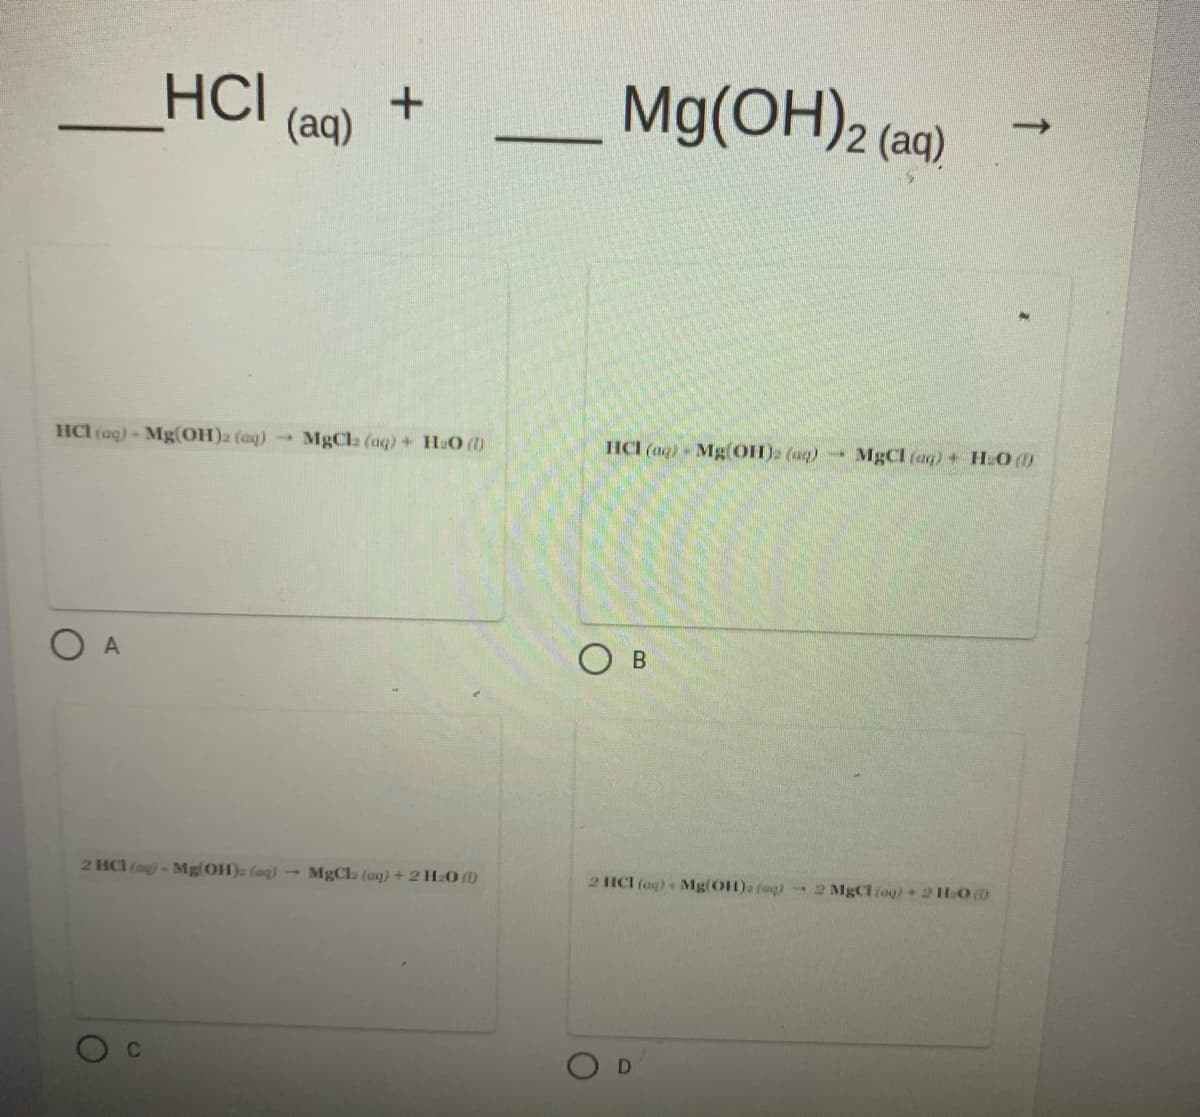 HCI
Mg(OH)2 (aq)
->
(aq)
HCl (aq) Mg(OH)2 (aq)
MgCla (aq)+ H:O ()
HCI (aq) - Mg(OH). (aq)-
-3
MgCl (aq) + HLO ()
O A
O B
2 HCl (ag)-Mg OH)a (ag)-MgCl (aq) + 2 H20 )
2 ICI (ag). Mg(OH)a fagi 2 MgCl (ag)+21O0
D
